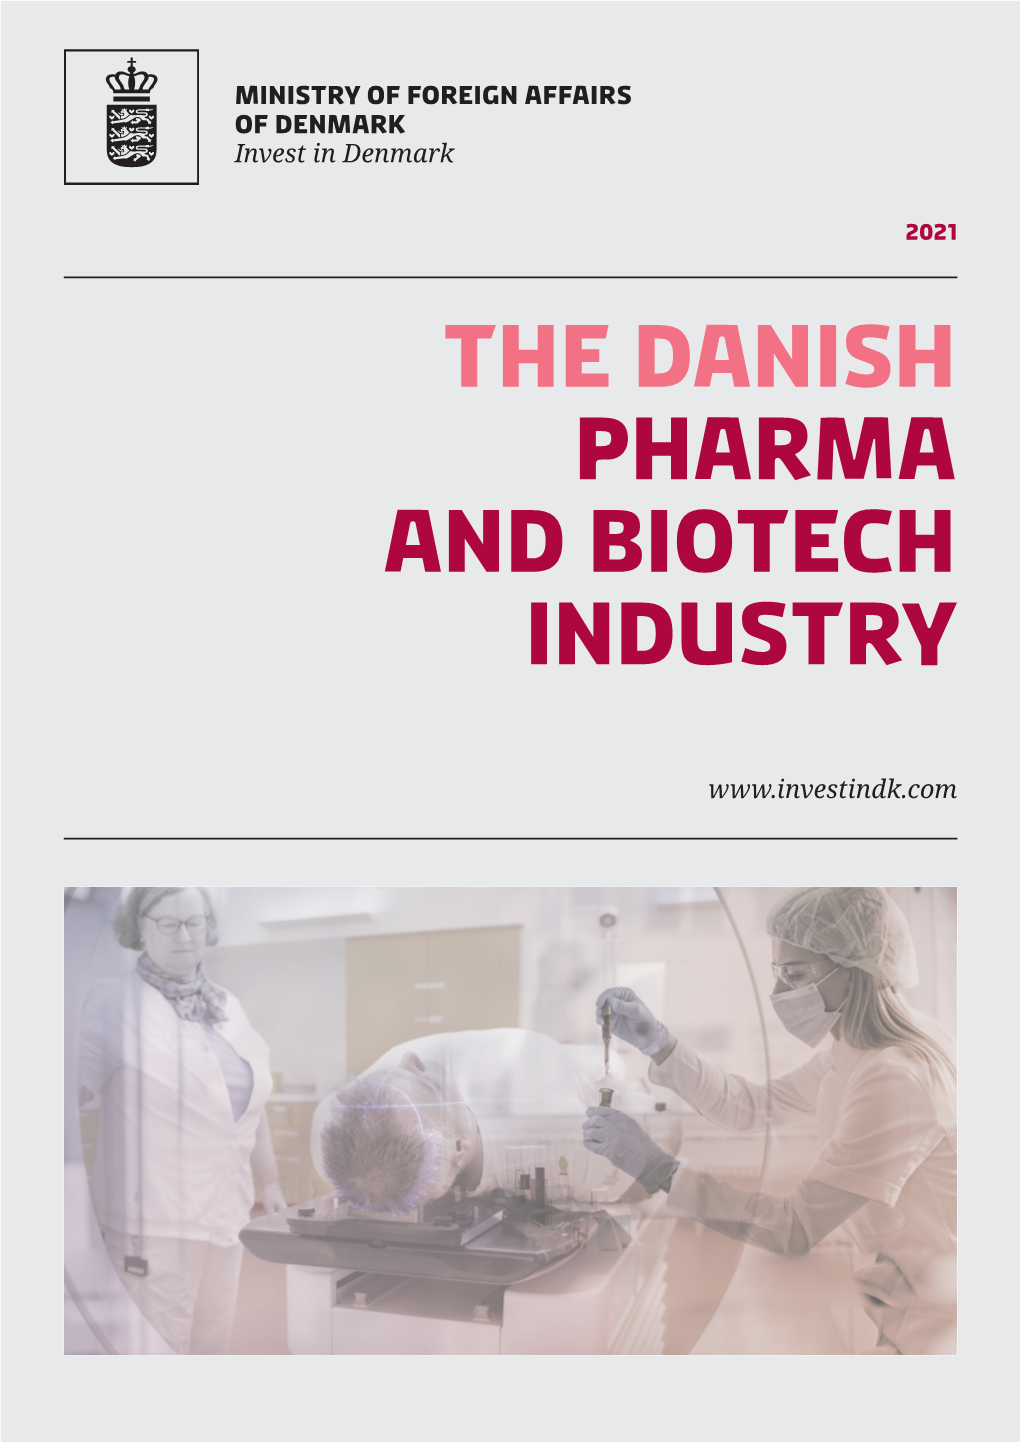 The Danish Pharma and Biotech Industry